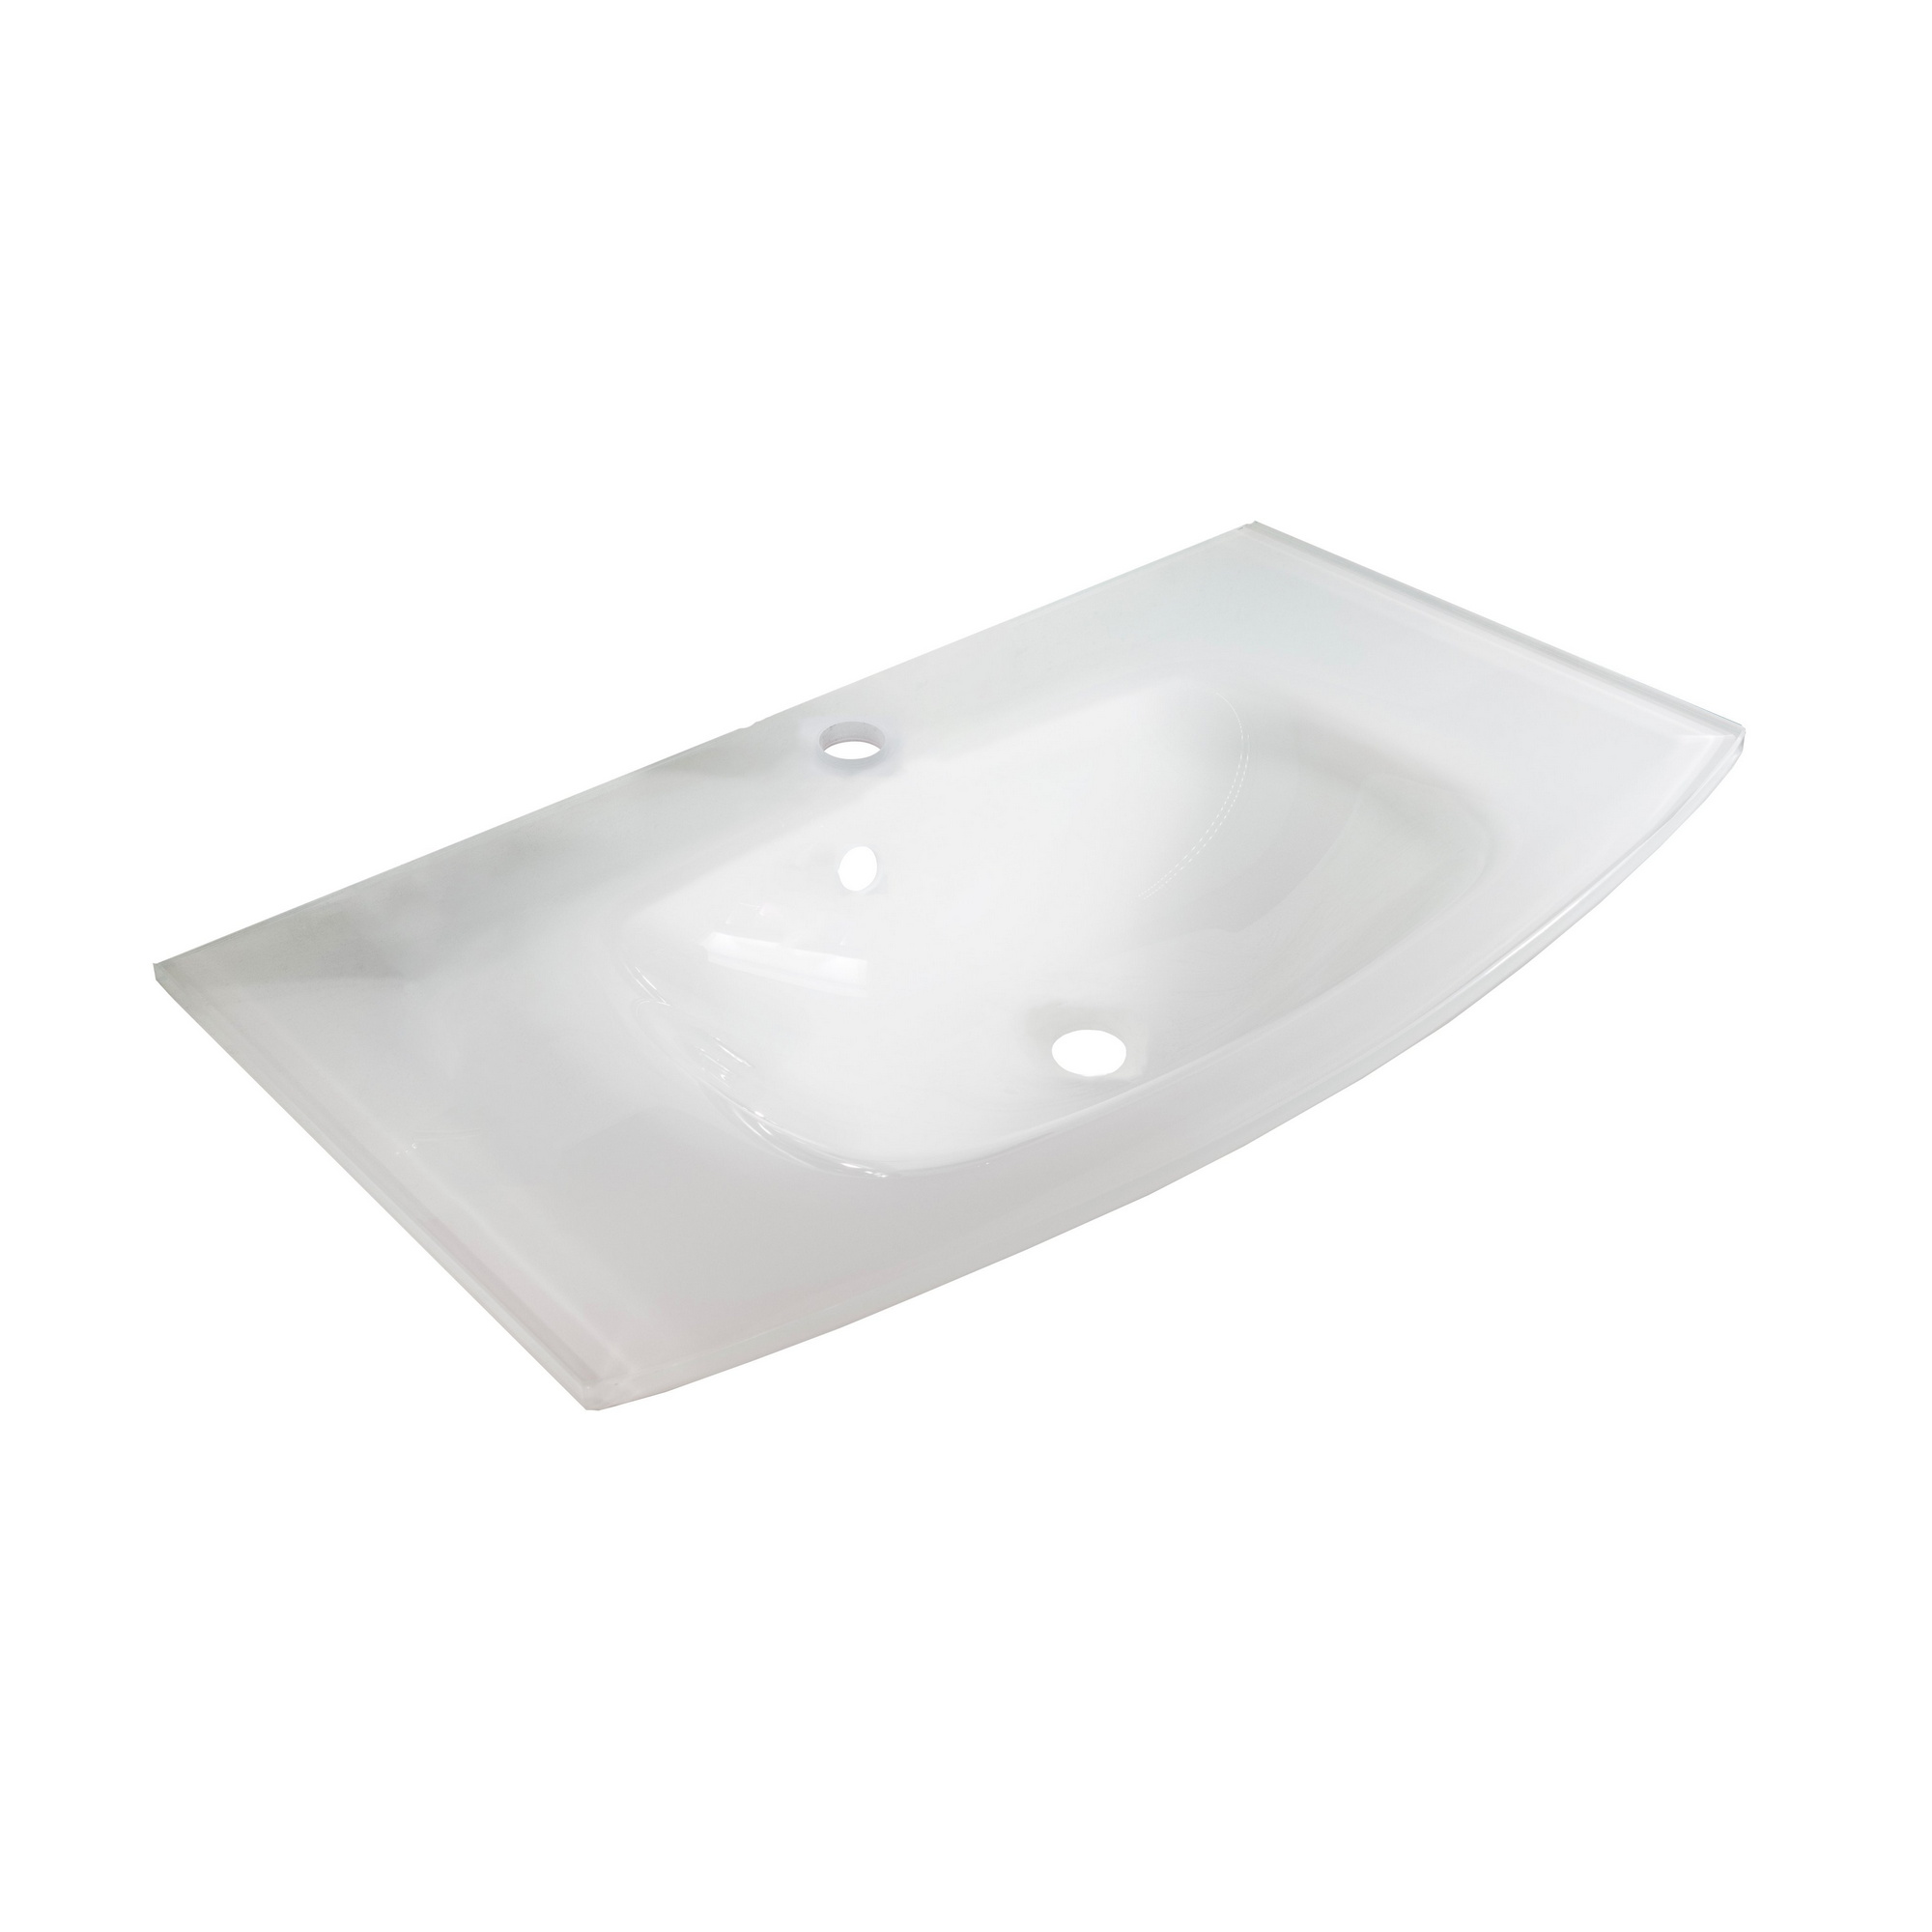 Glasbecken 'Lugano' 80,5 cm weiß, geschwungen + product picture